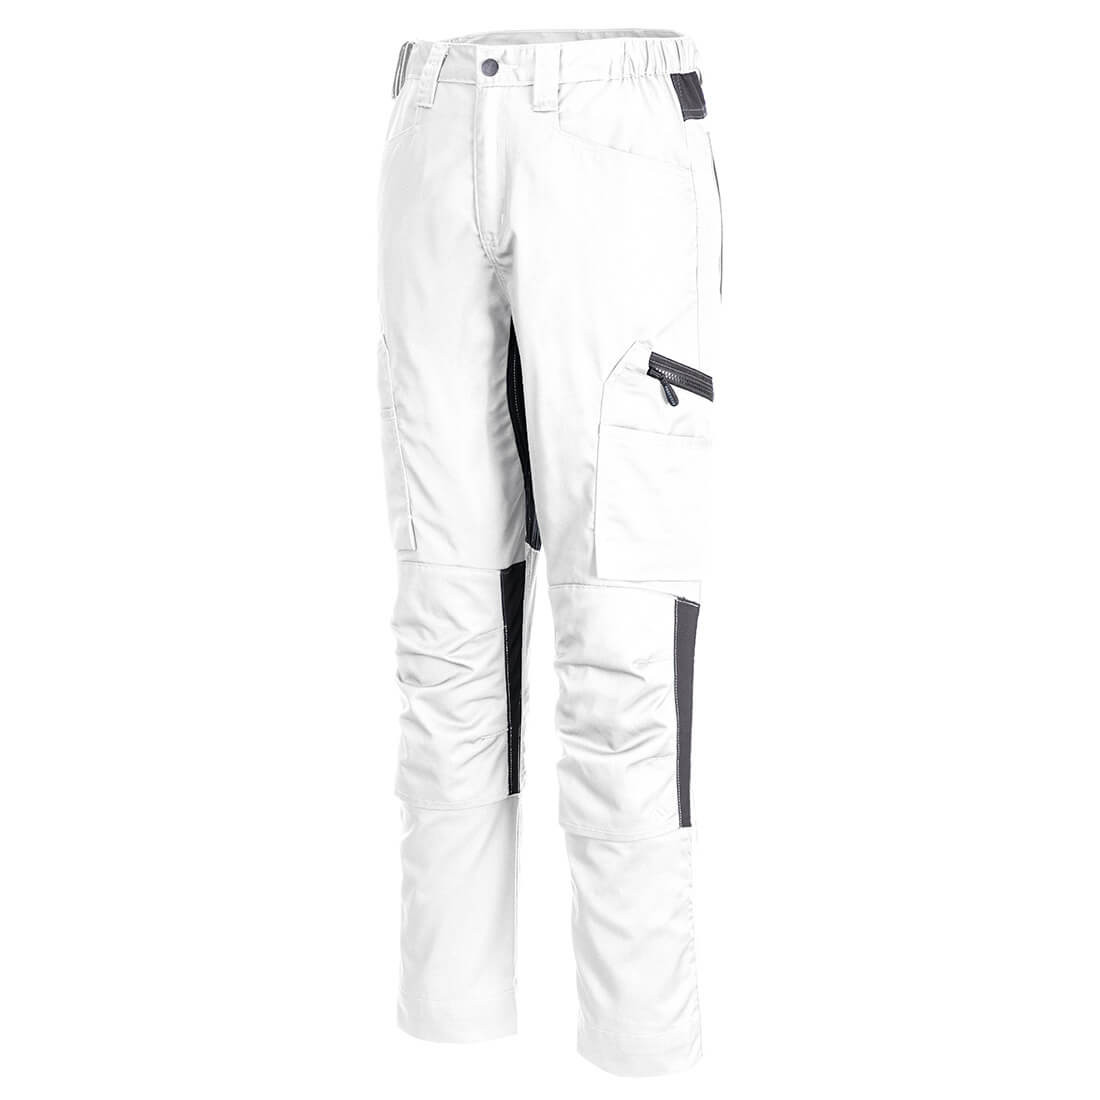 Pantalon de travail WX2 Eco Stretch - Les vêtements de protection